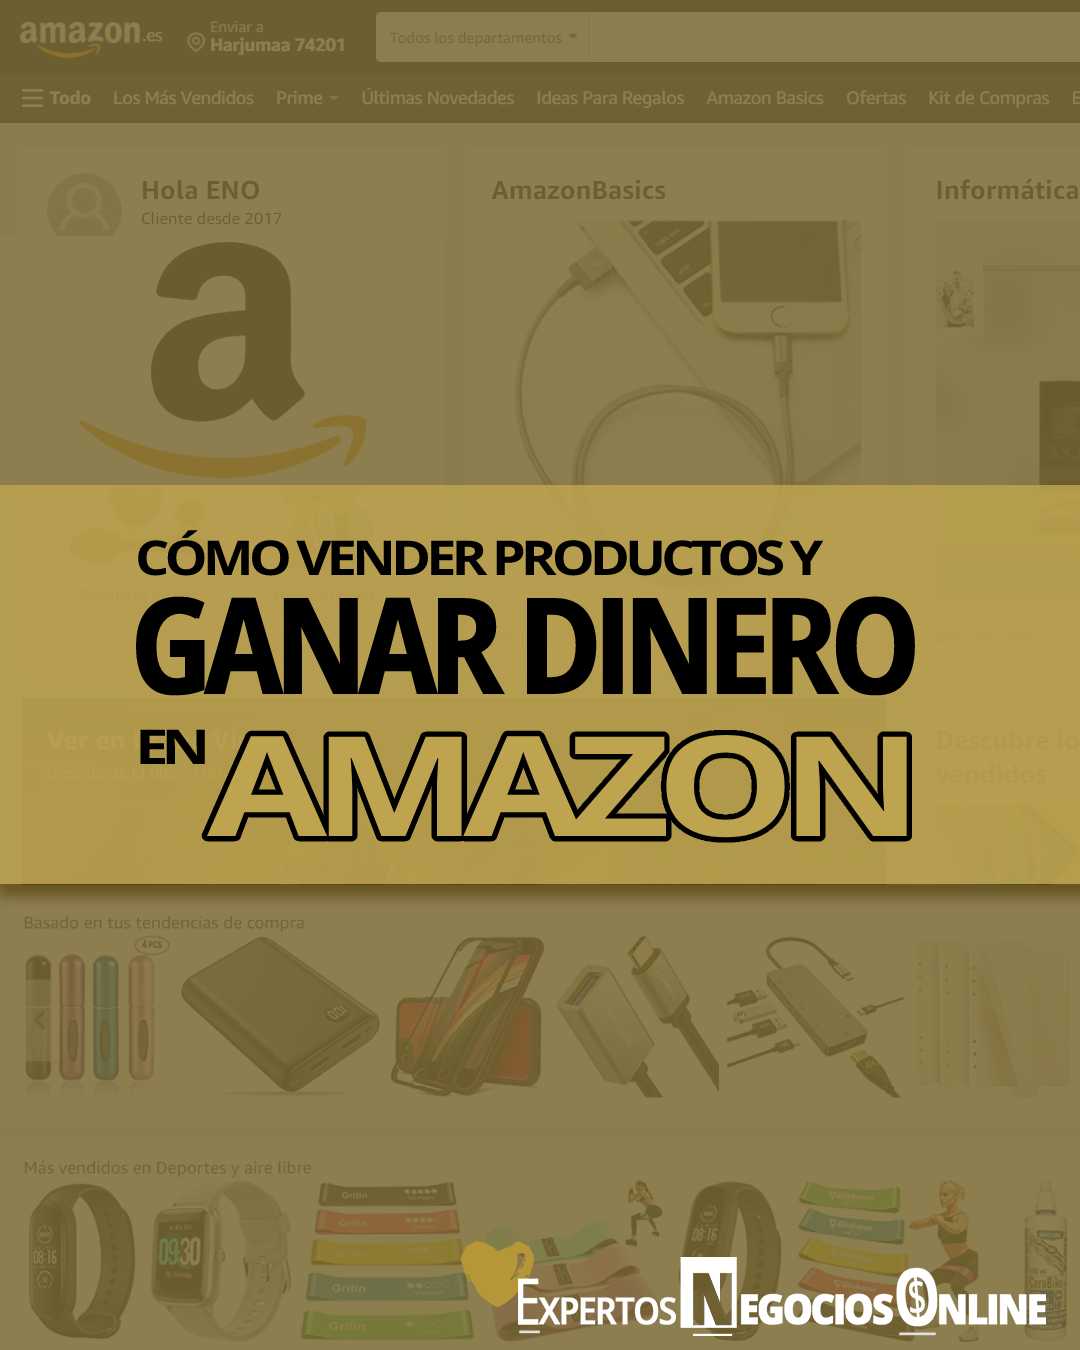 Vender en Amazon: Tu guía completa para hacerlo bien (paso a paso)